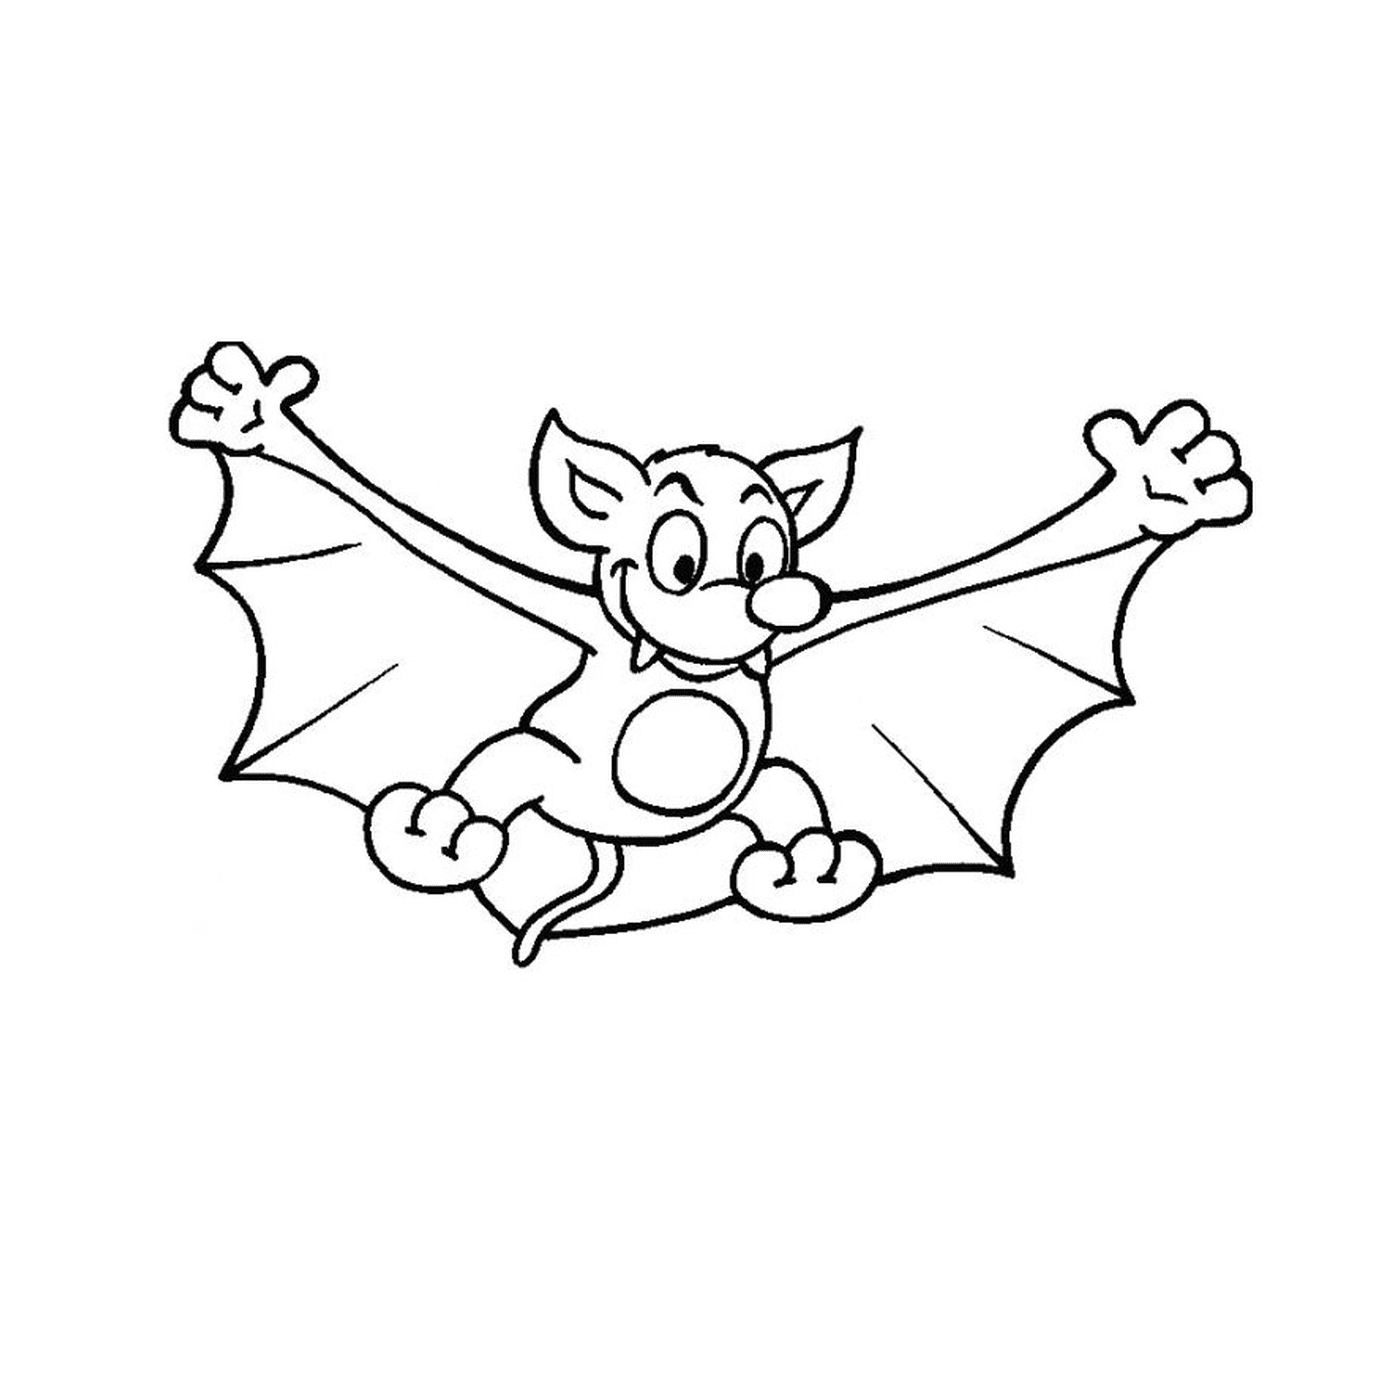  Bat flying in the sky 